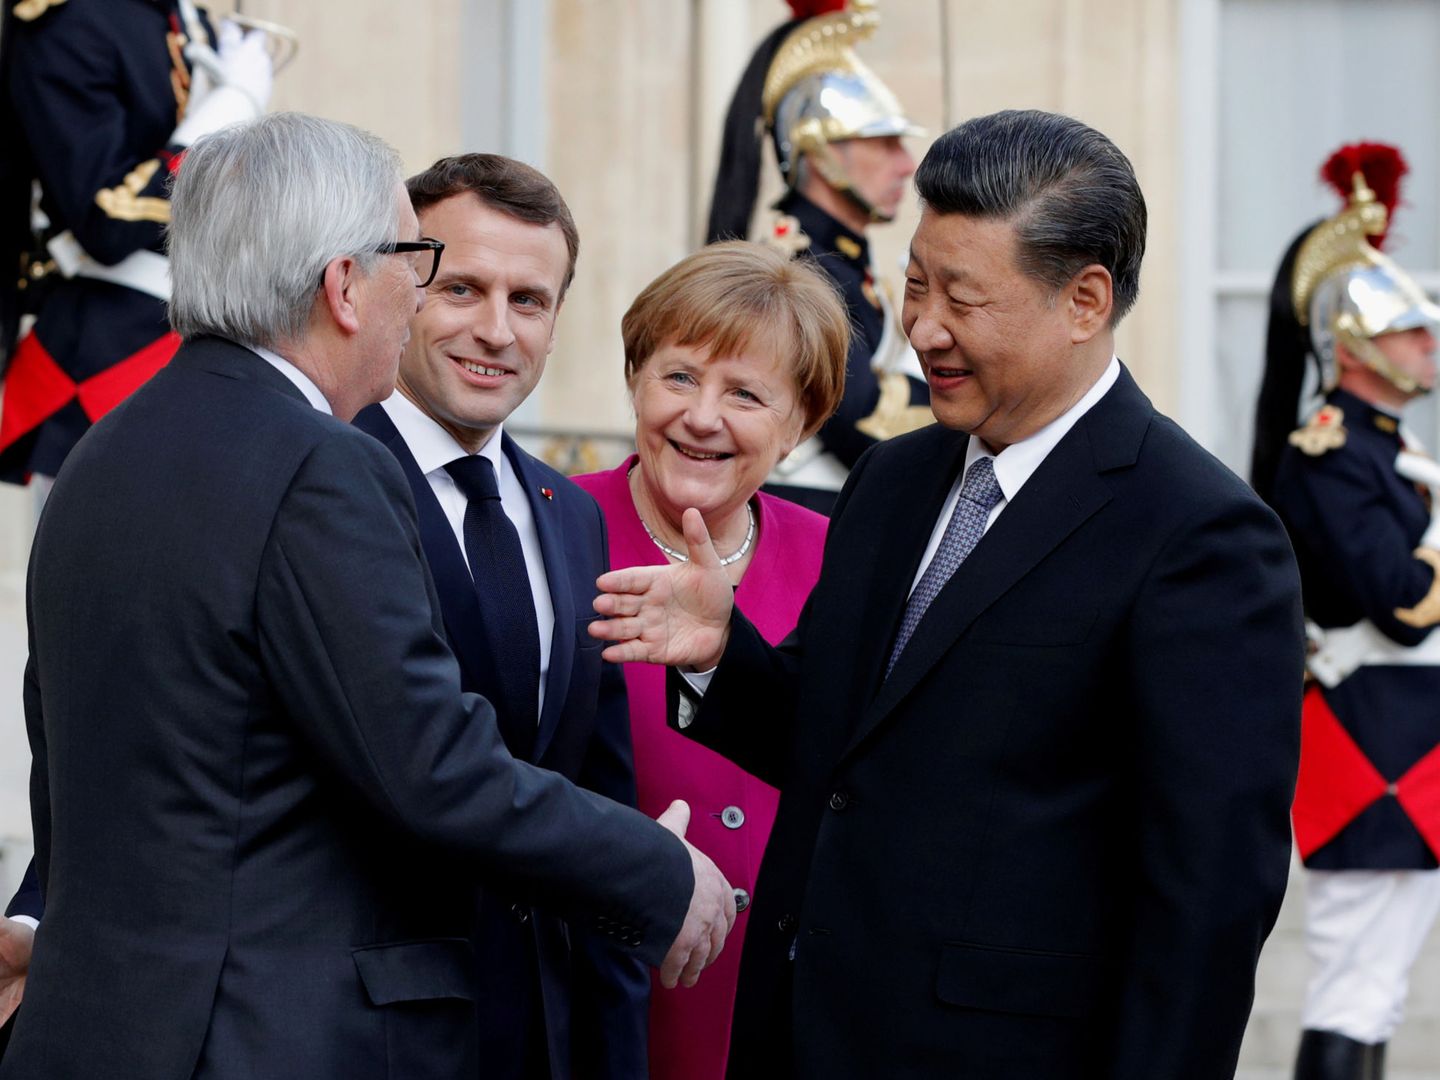 El presidente de la Comisión Europea saluda al presidente chino ante las miradas de Macron y Merkel. (Reuters)